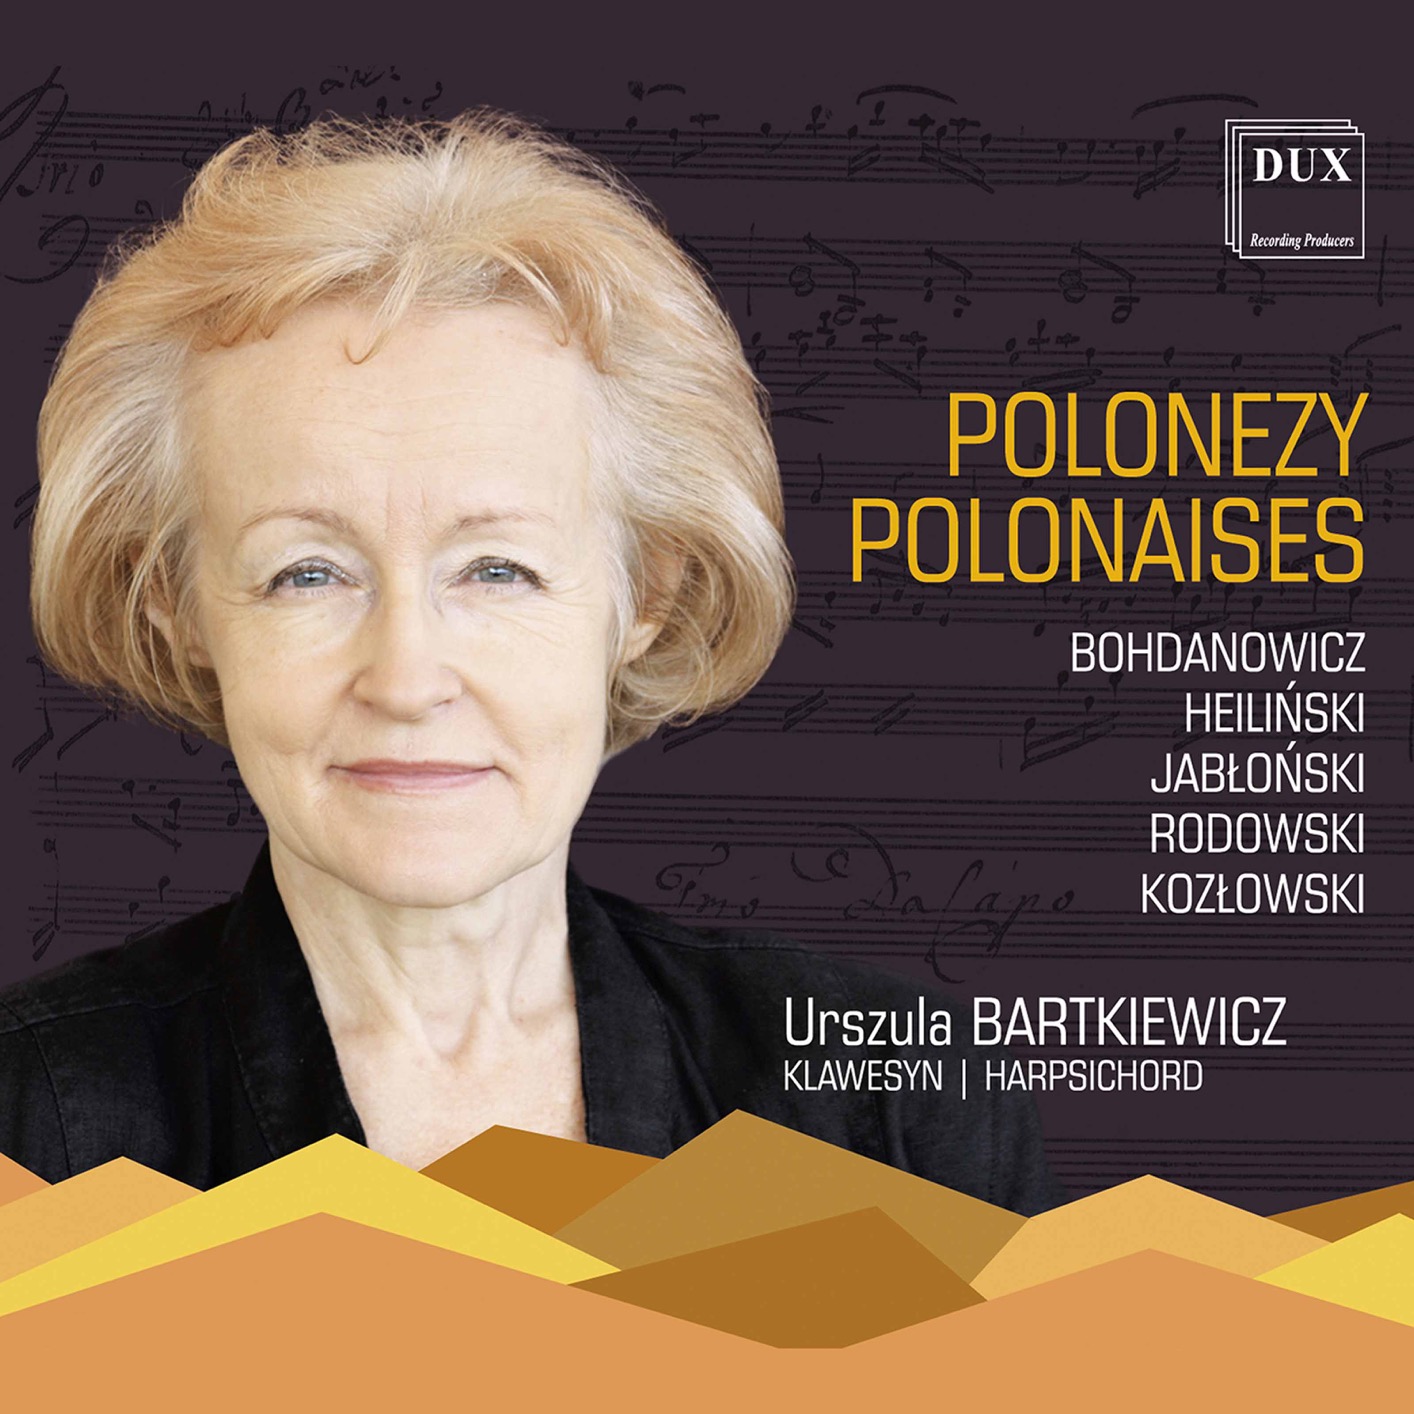 Urszula Bartkiewicz – Kozłowski, Rodowski & Others Polonaises (2021) [FLAC 24bit/96kHz]